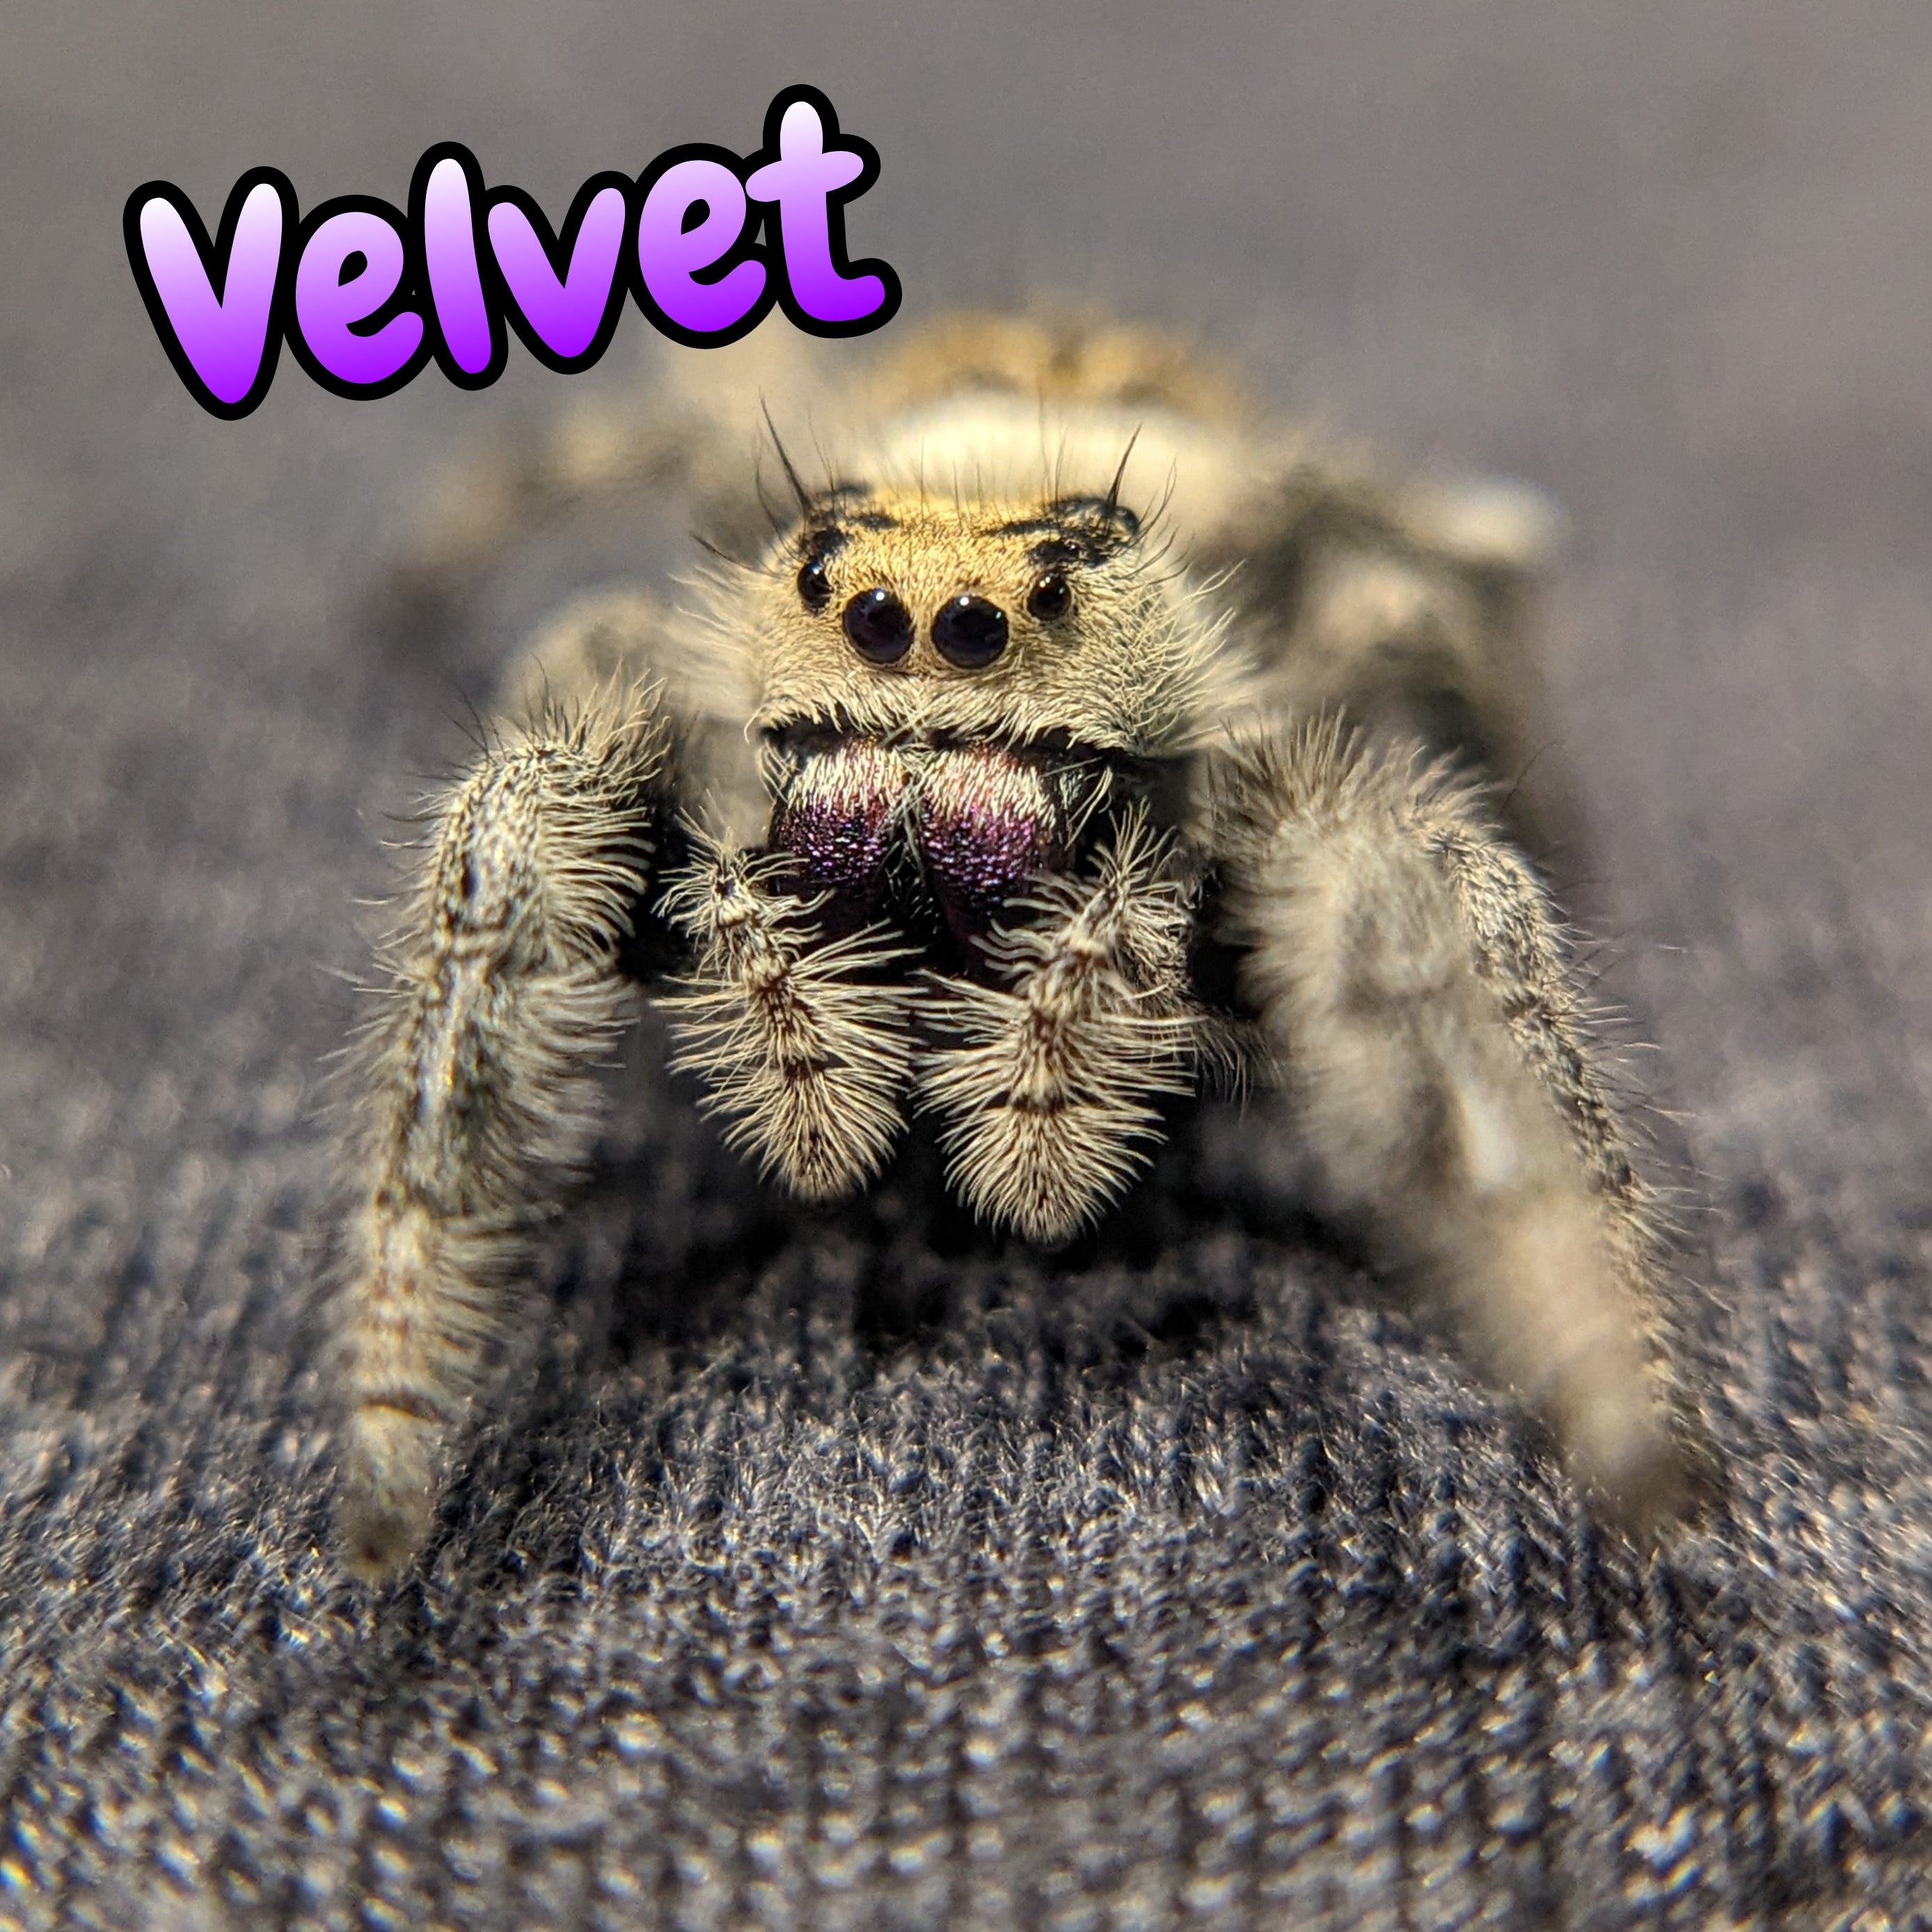 Regal Jumping Spider "Velvet"